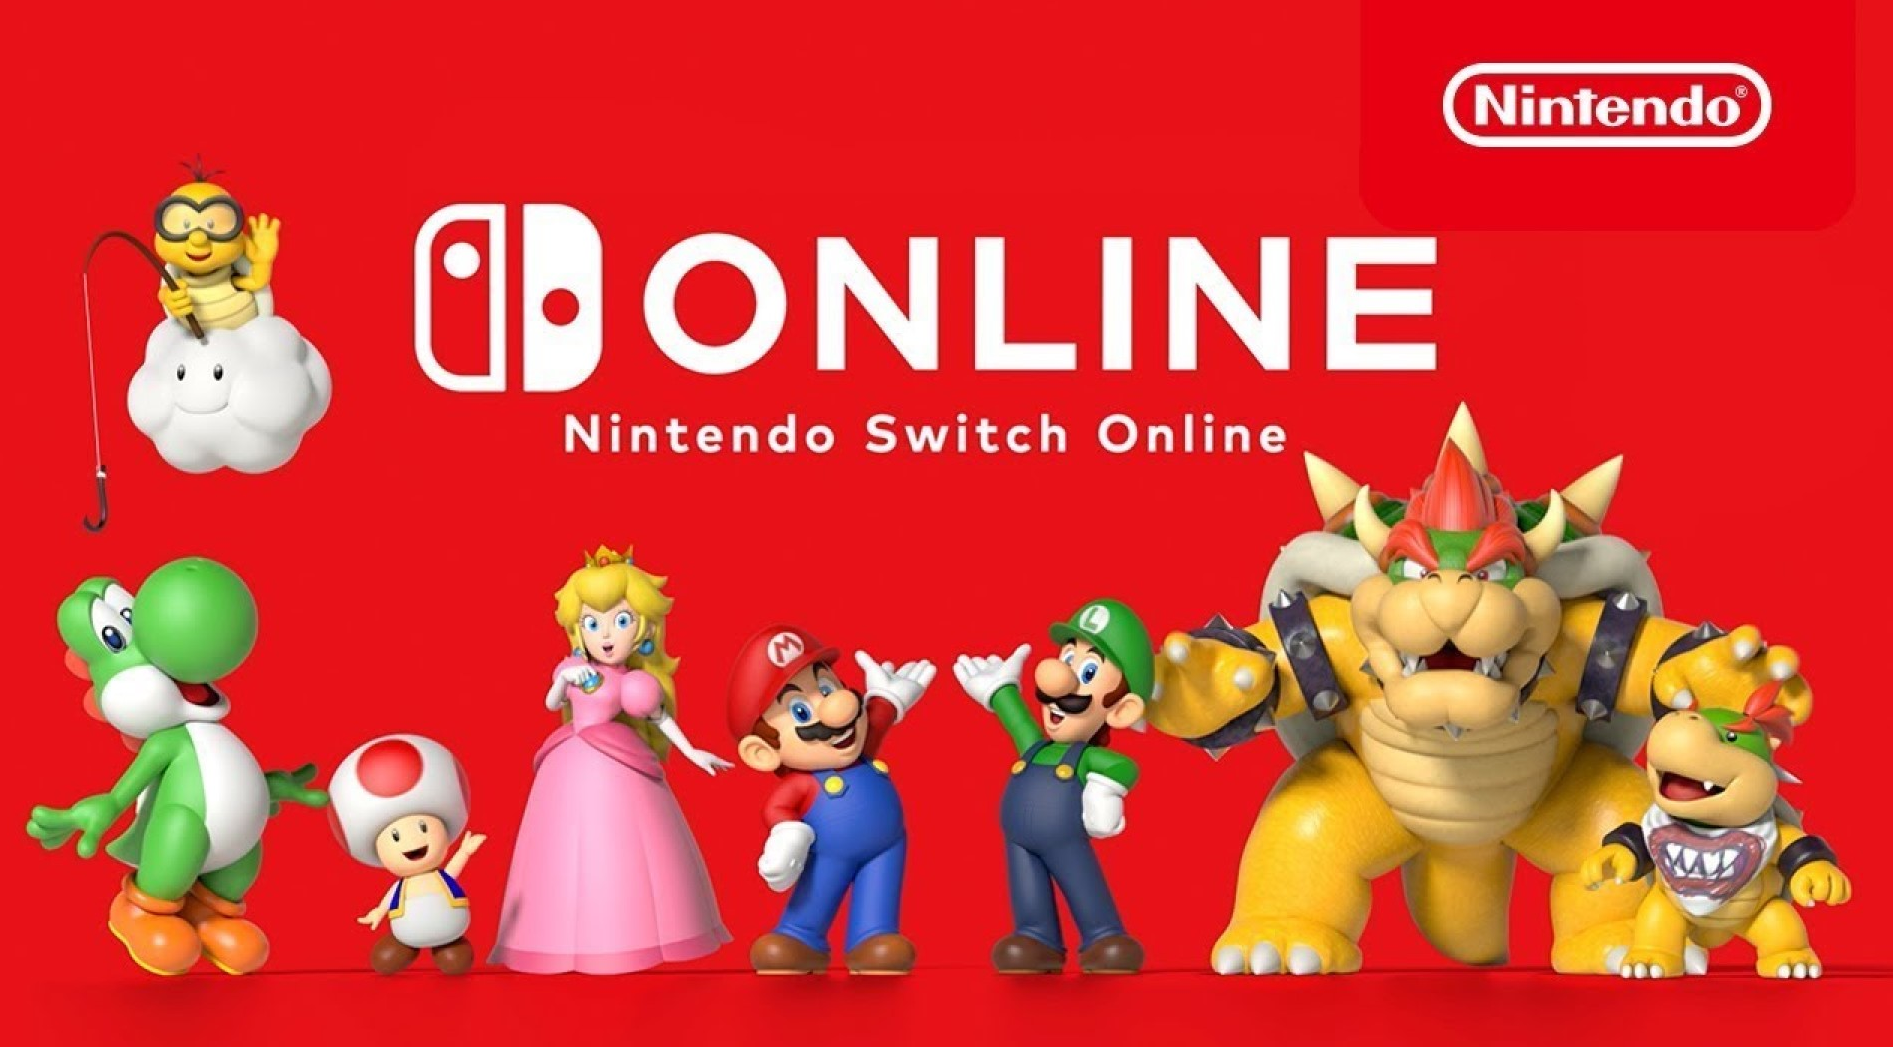 Nintendo Switch Online มีการเป็นสมาชิกเกินกว่า 36 ล้านคนแล้ว ถึงแม้จะเพิ่มจากเดิมมาไม่มากก็ตาม